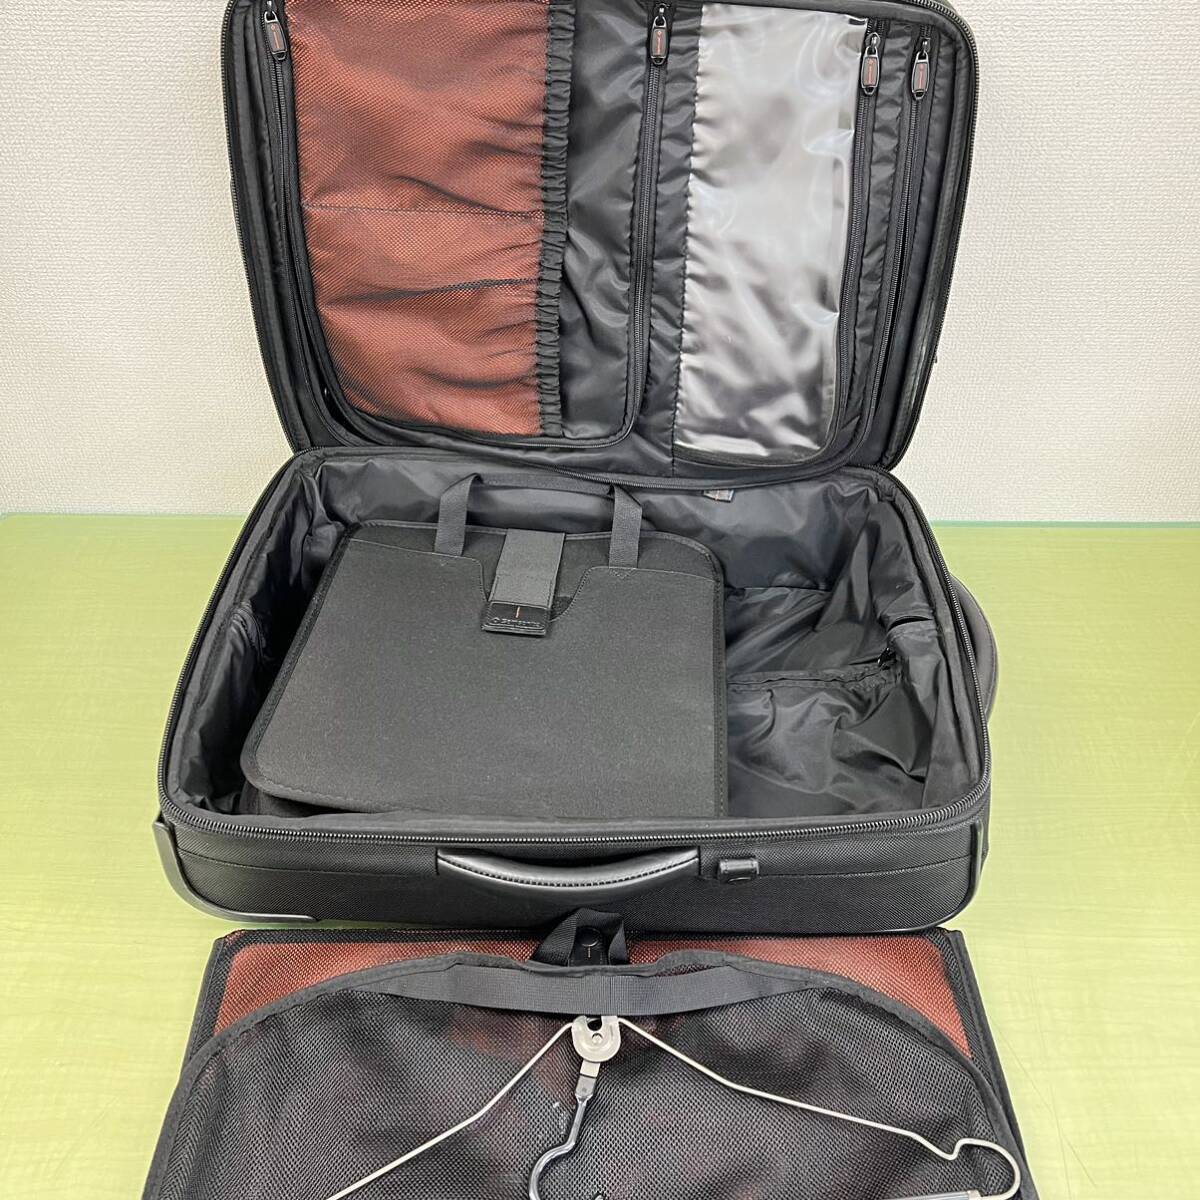 # Samsonite Samsonite Carry case suitcase carry bag black 